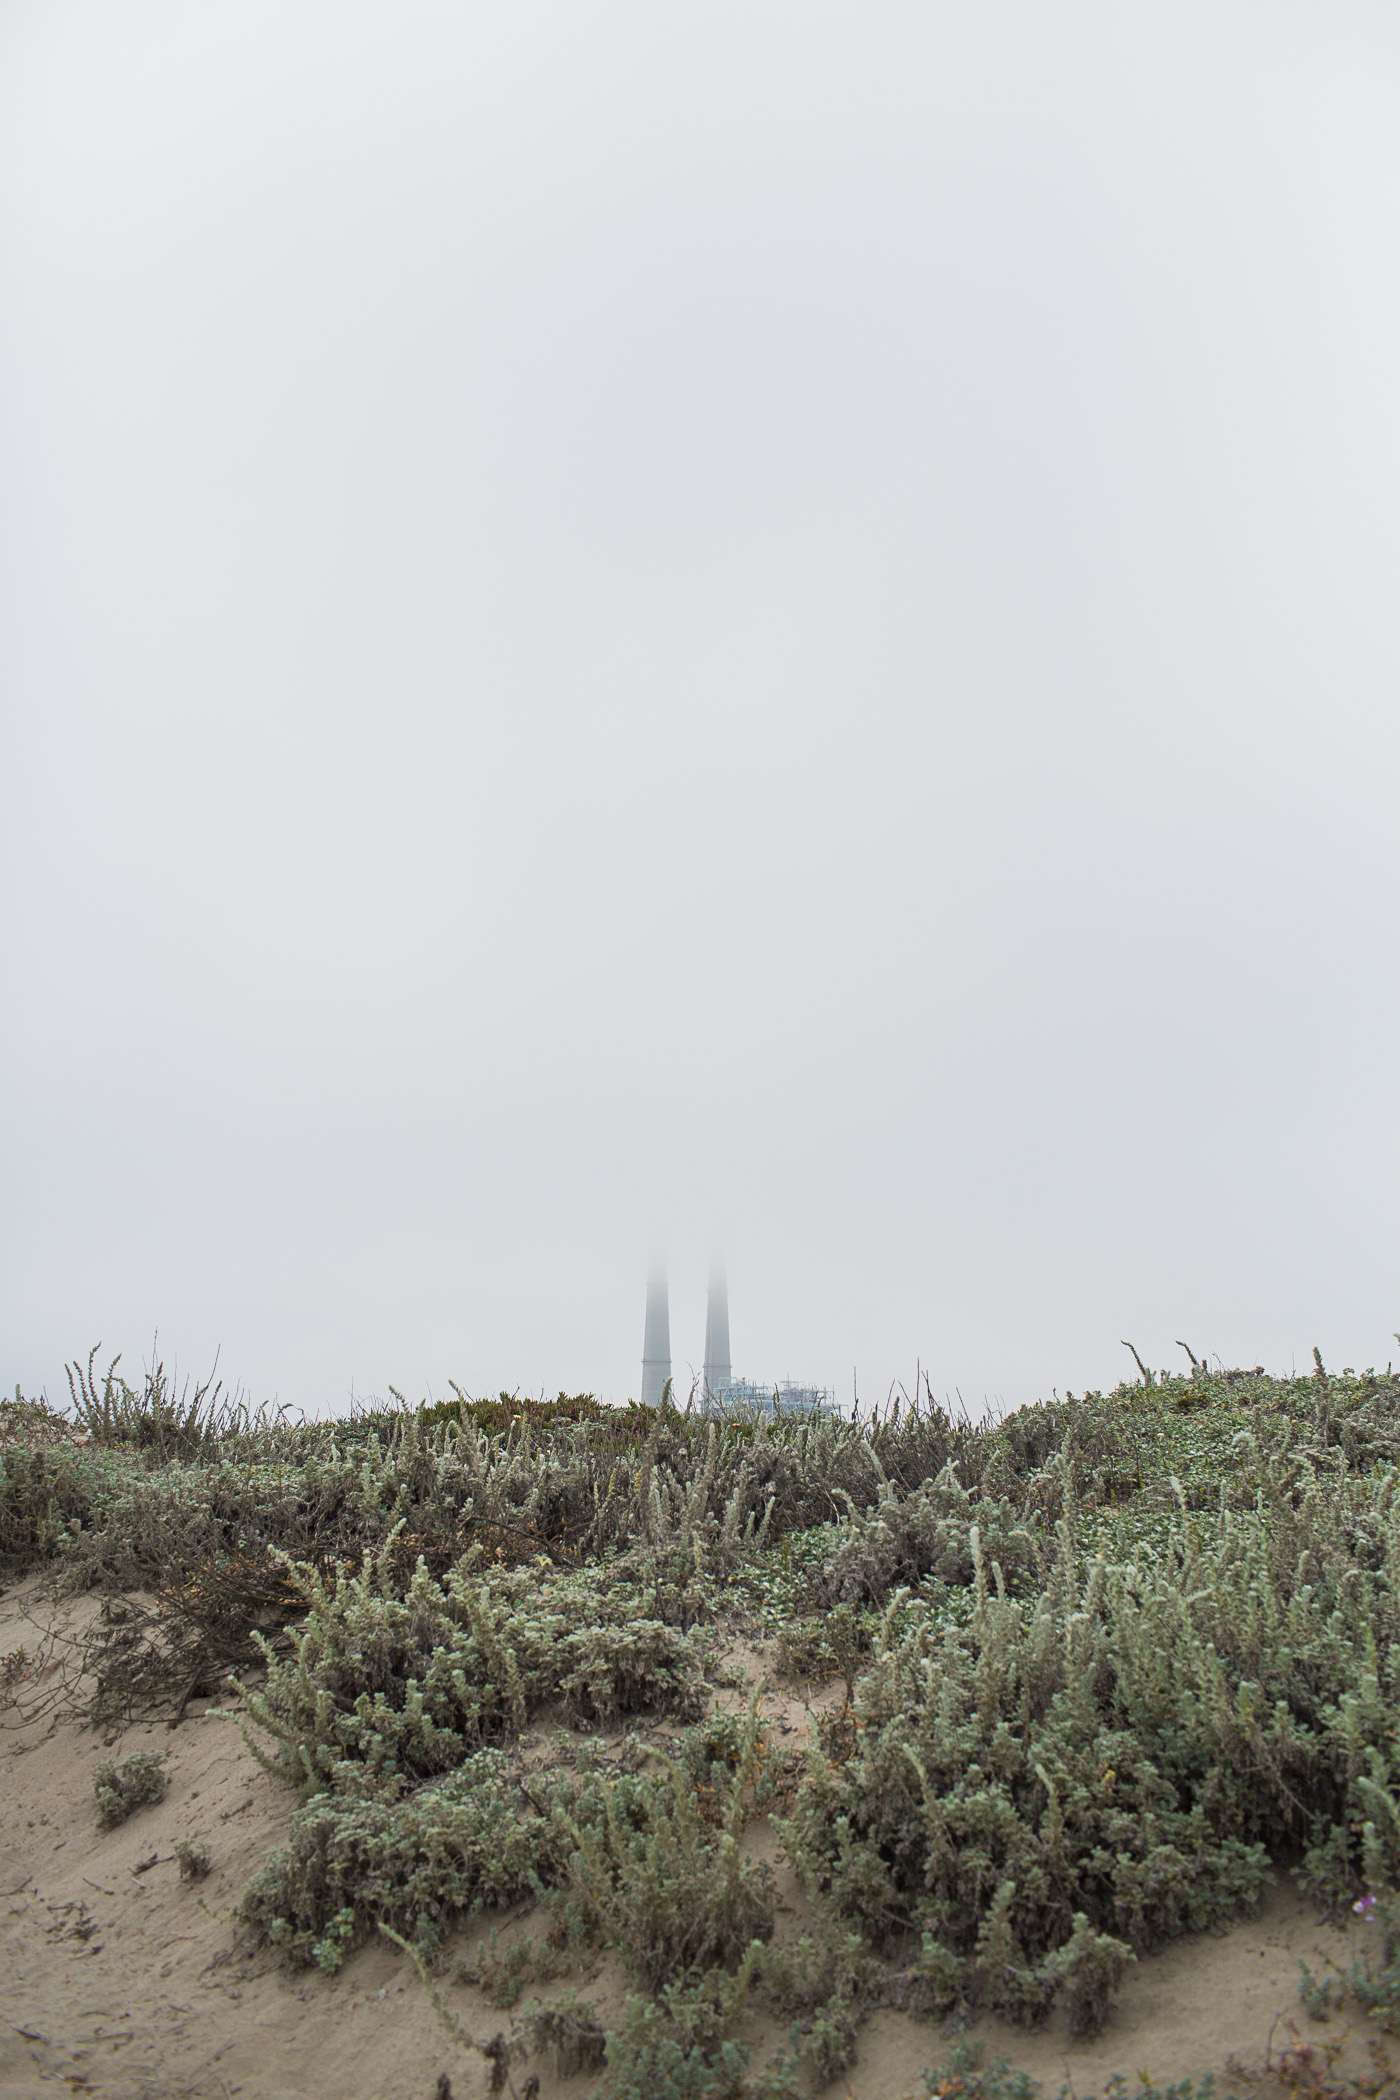 Fog at Moss Landing State Beach, in Moss Landing, California